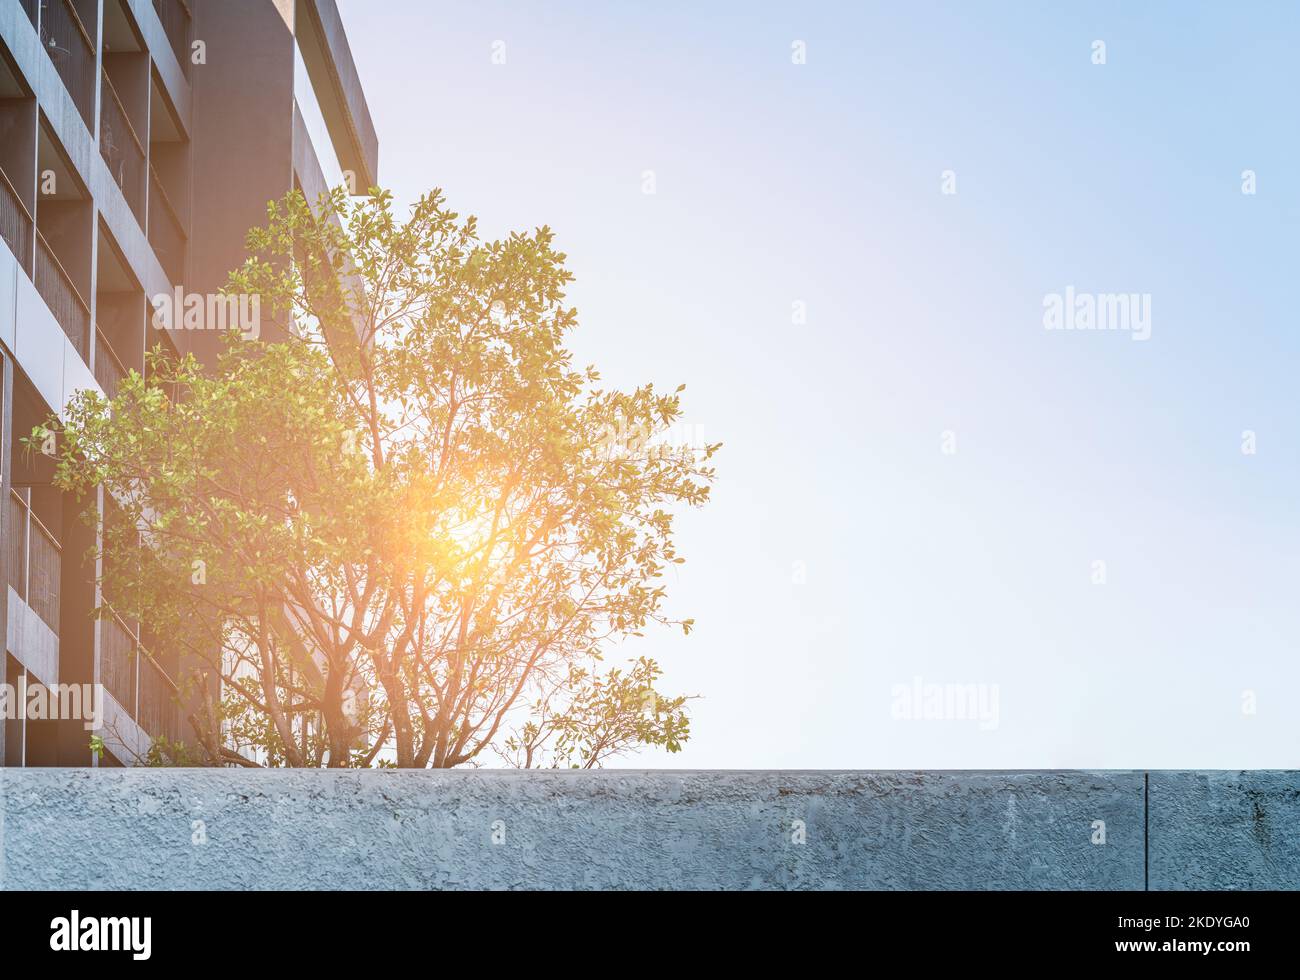 Schöner Garten auf dem Dach eines Wohnhauses in Asien, Garten auf einem Gebäude, warmes Licht, gerohter Himmel mit leerem Platz für Kopie. Stockfoto